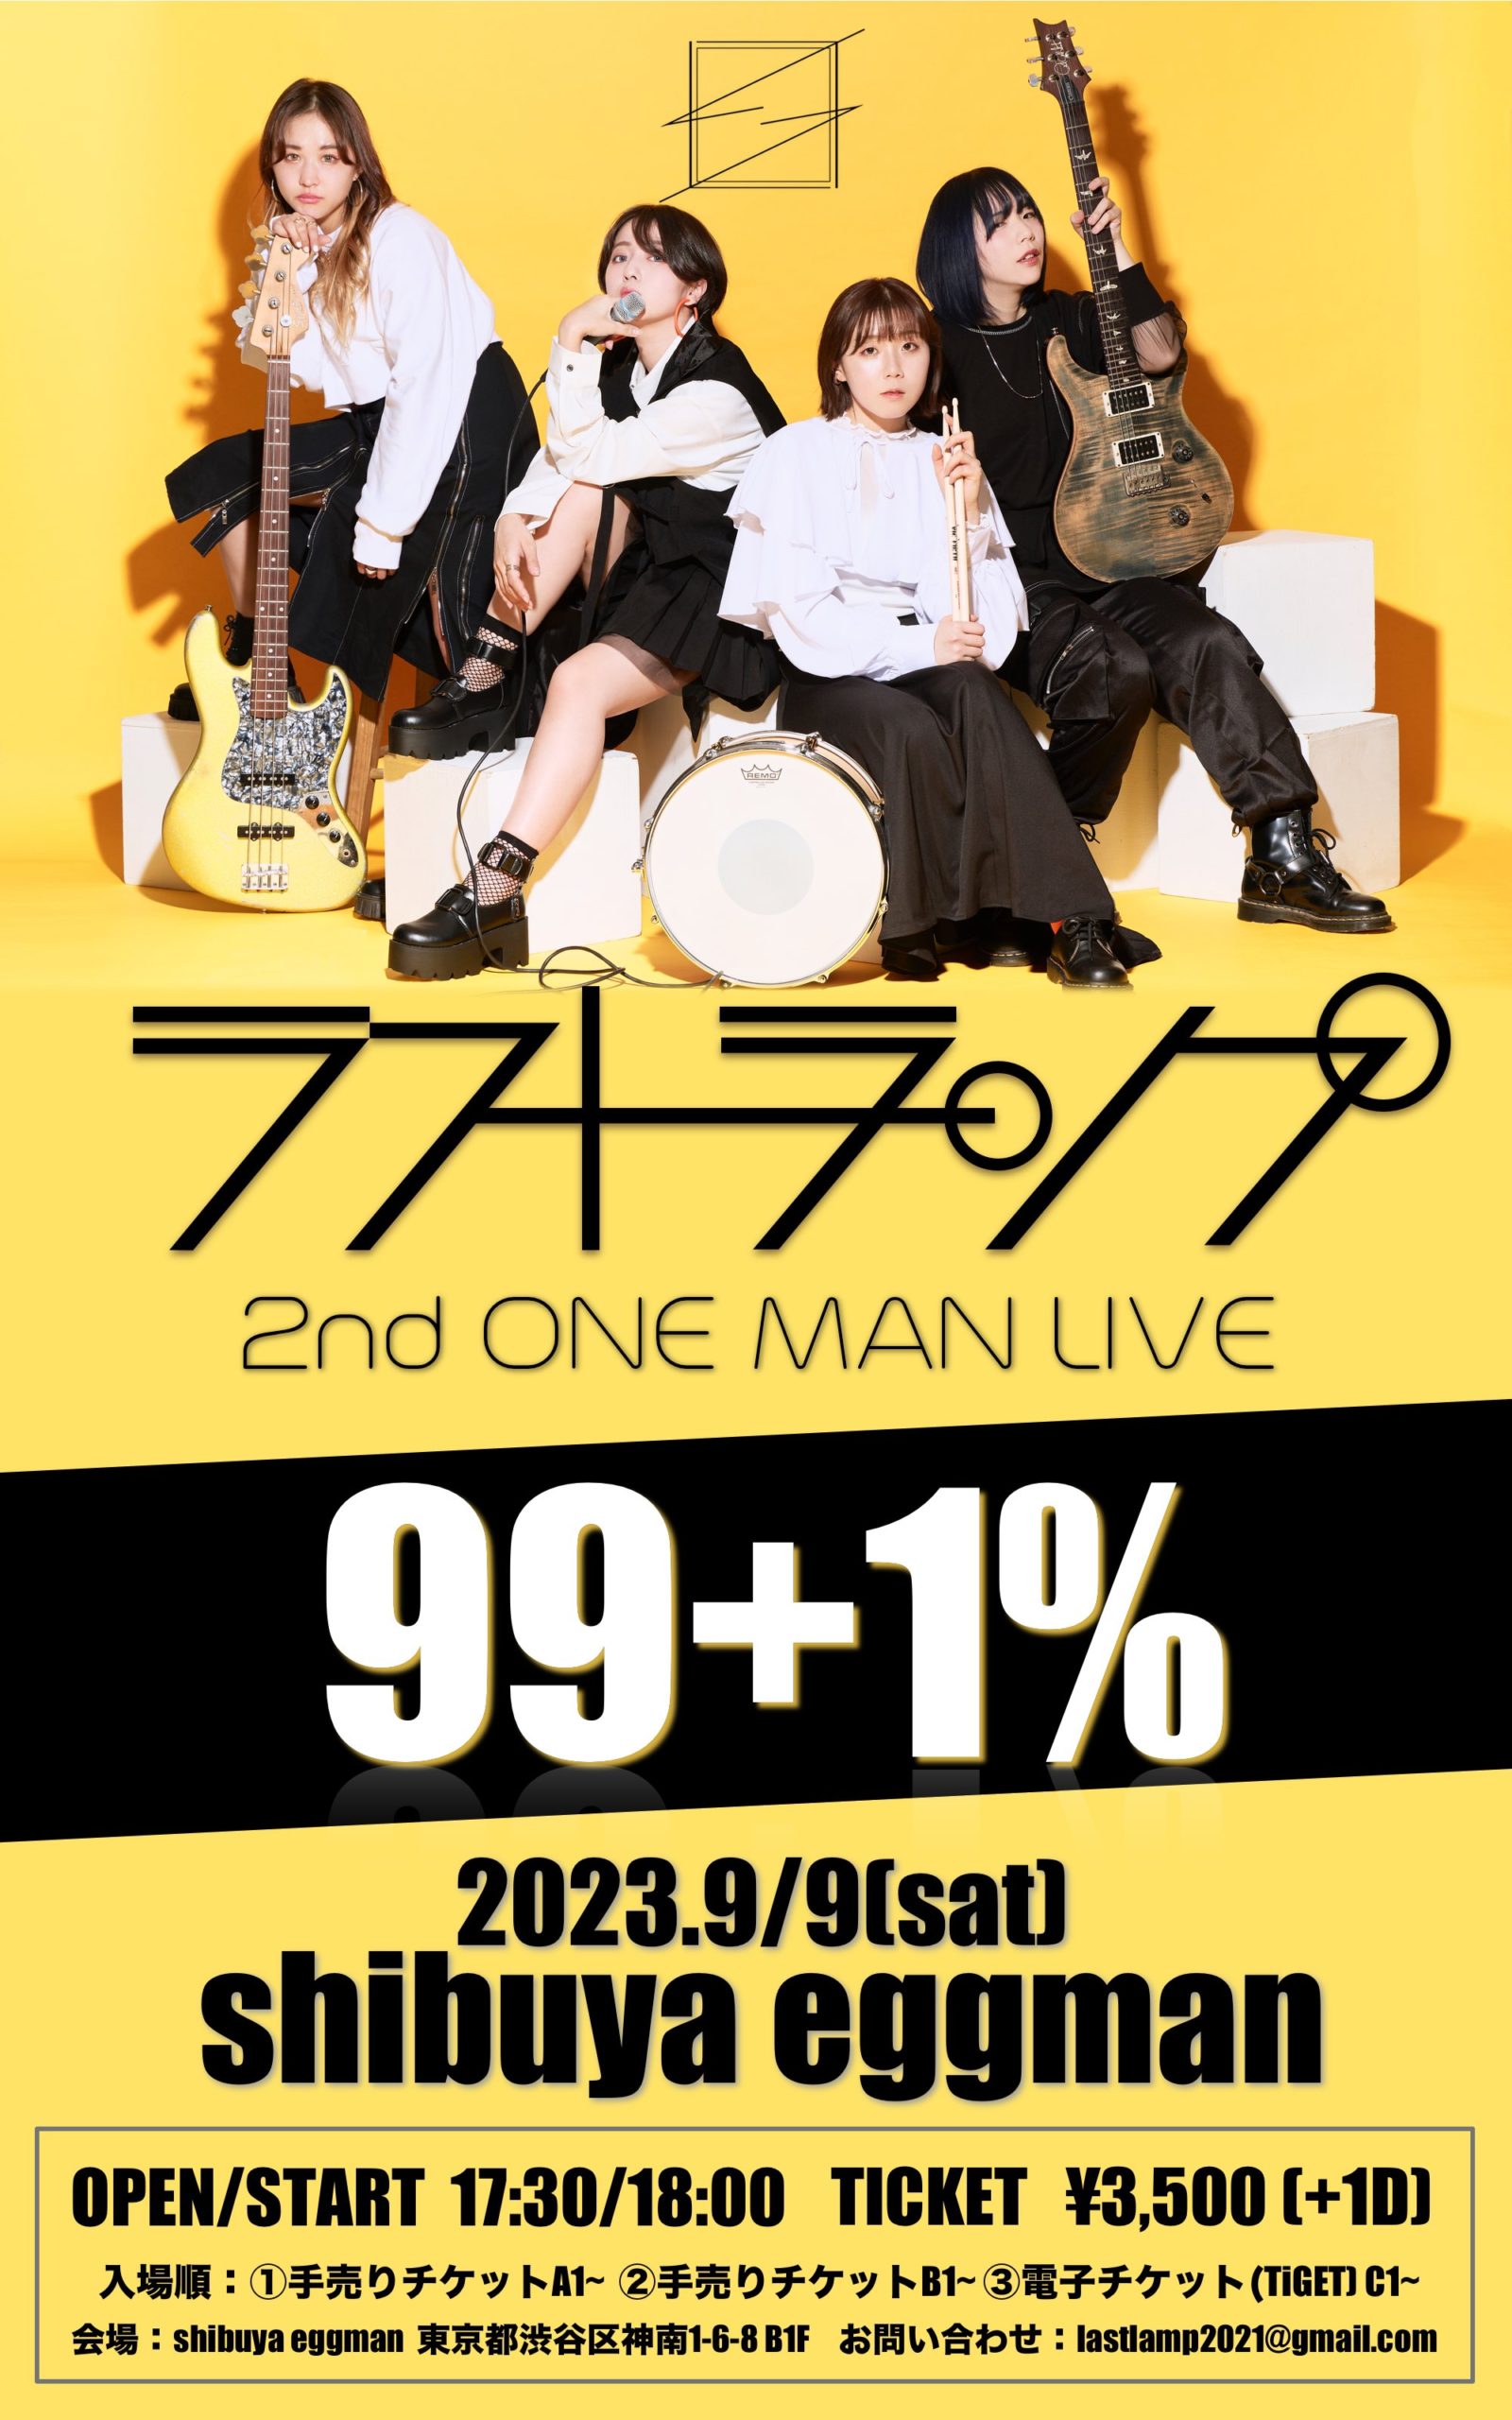 ラストランプ 2nd ONE MAN LIVE 99+1%